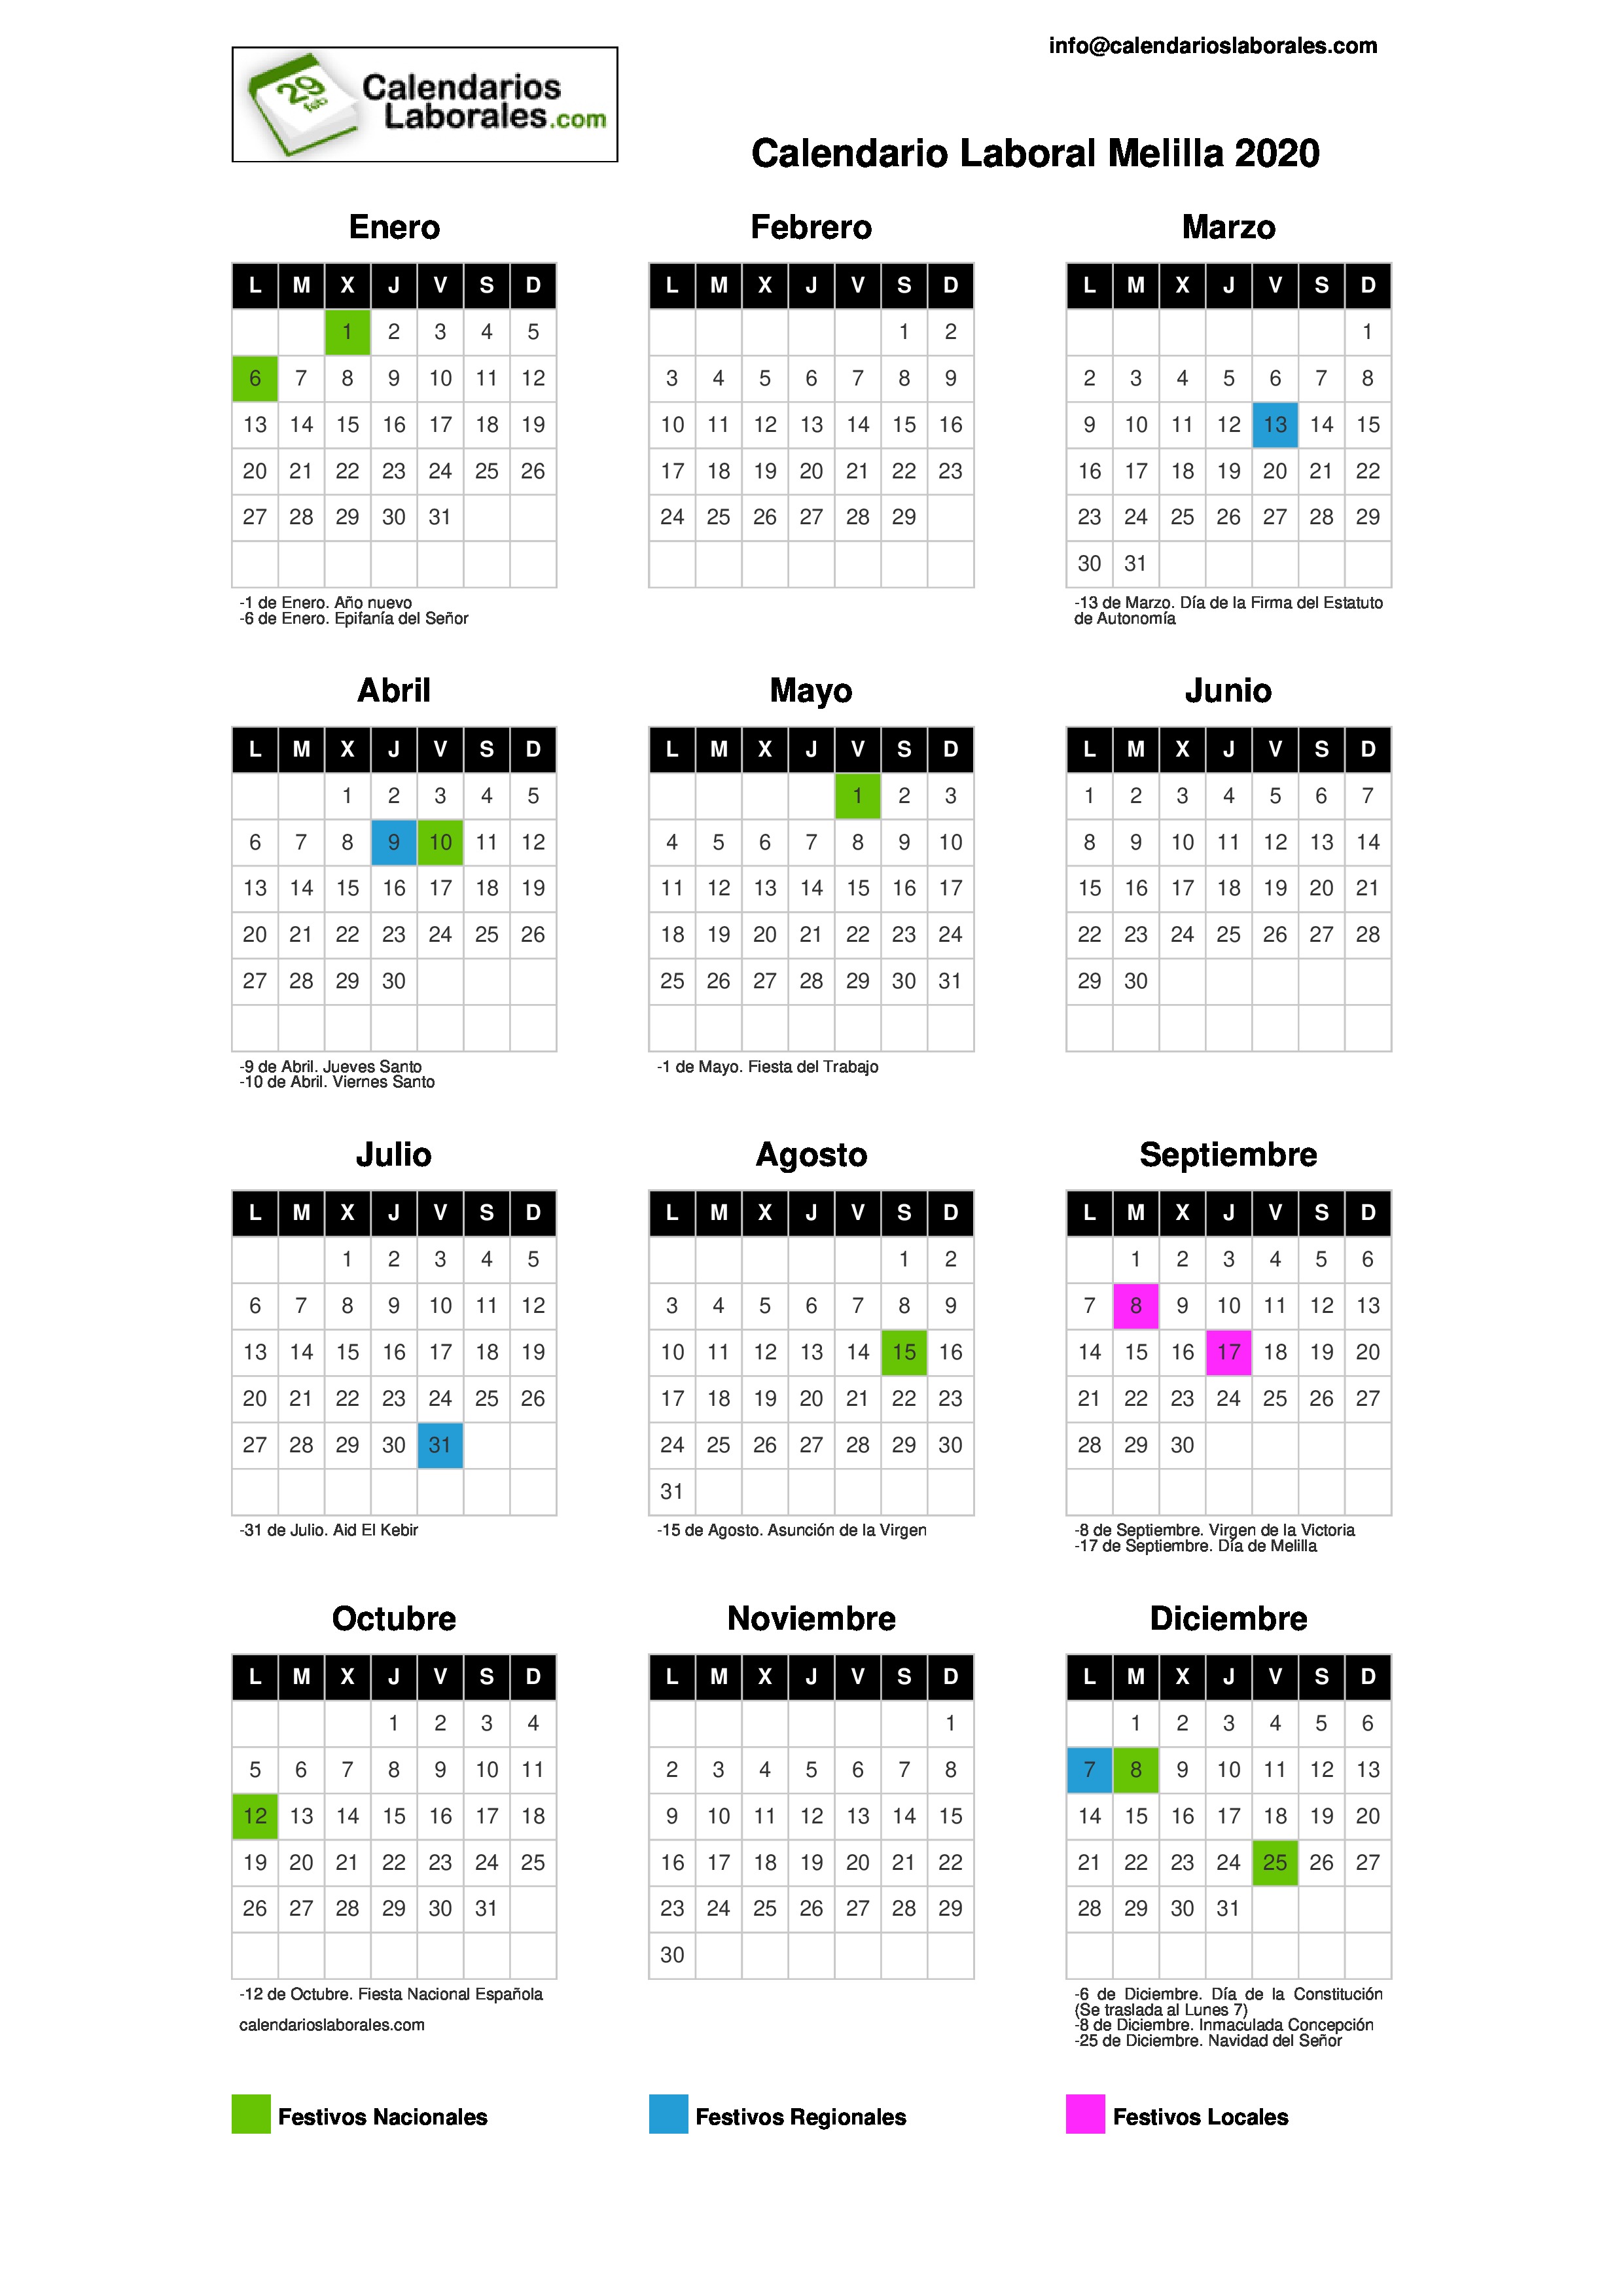 Calendario Laboral 2021 Barcelona - Calendario Laboral Pamplona 2020 - En la ciudad de barcelona, el calendario laboral del próximo año.